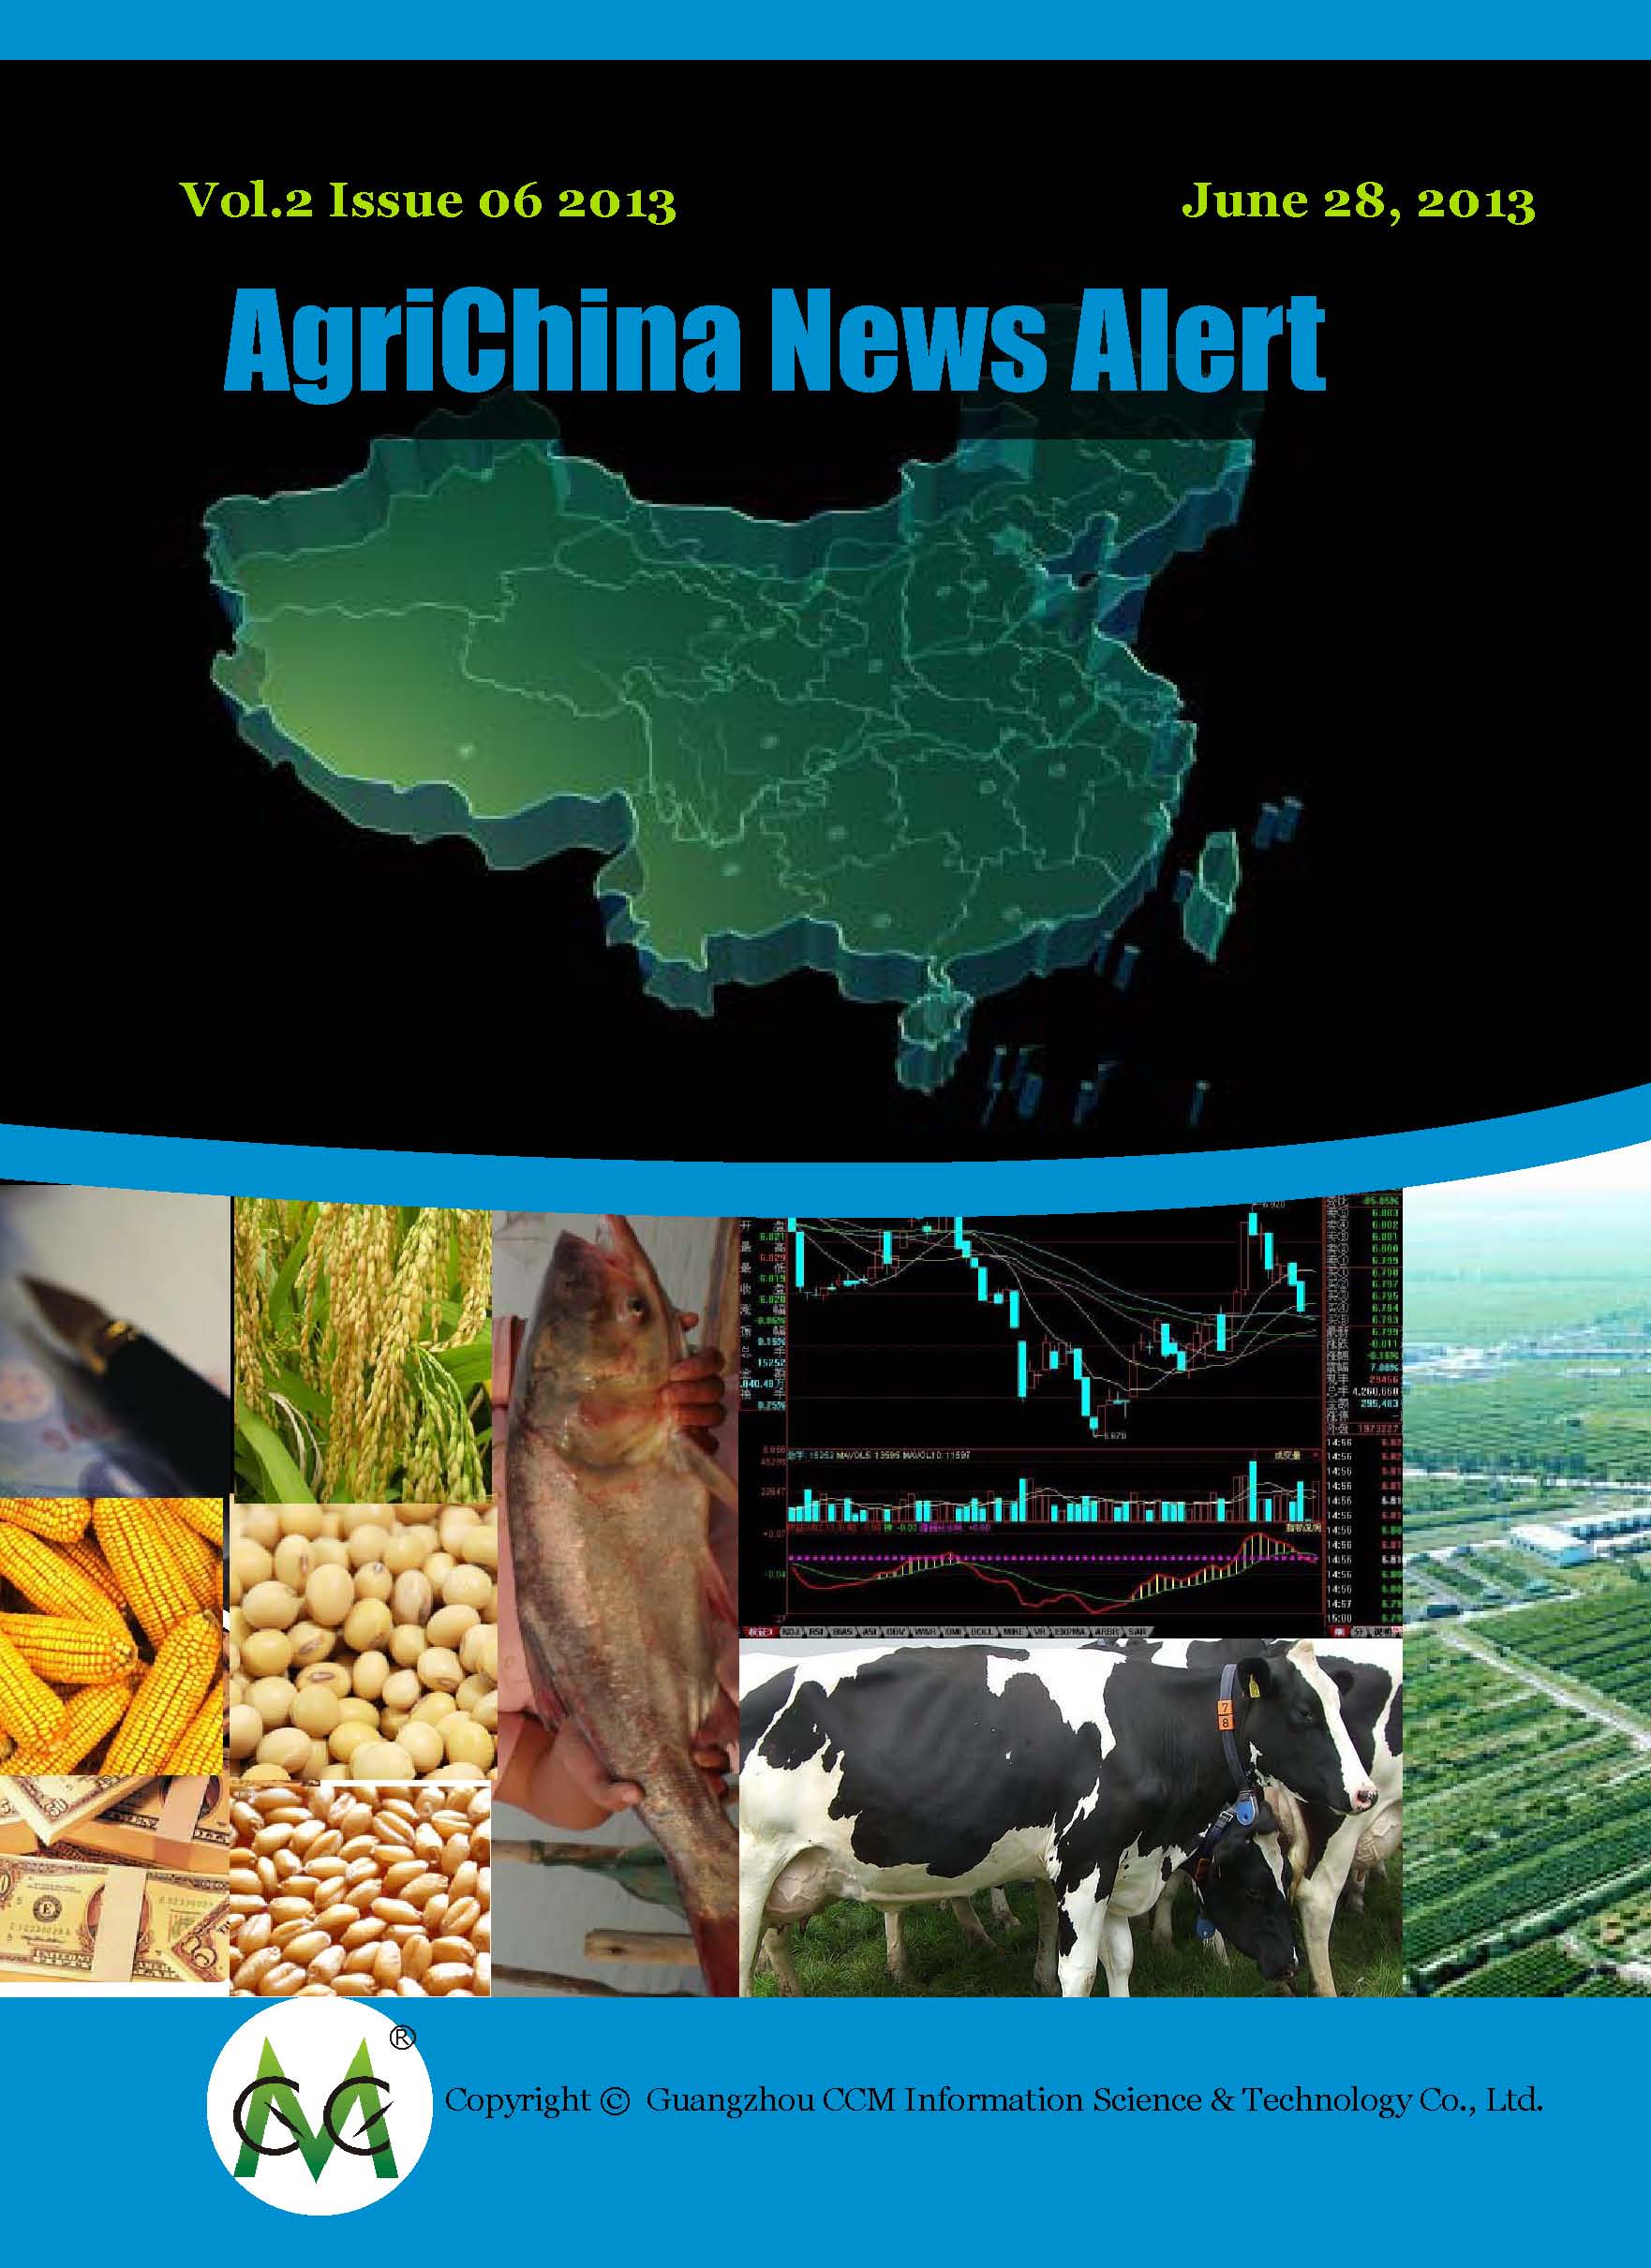 AgriChina News Alerts